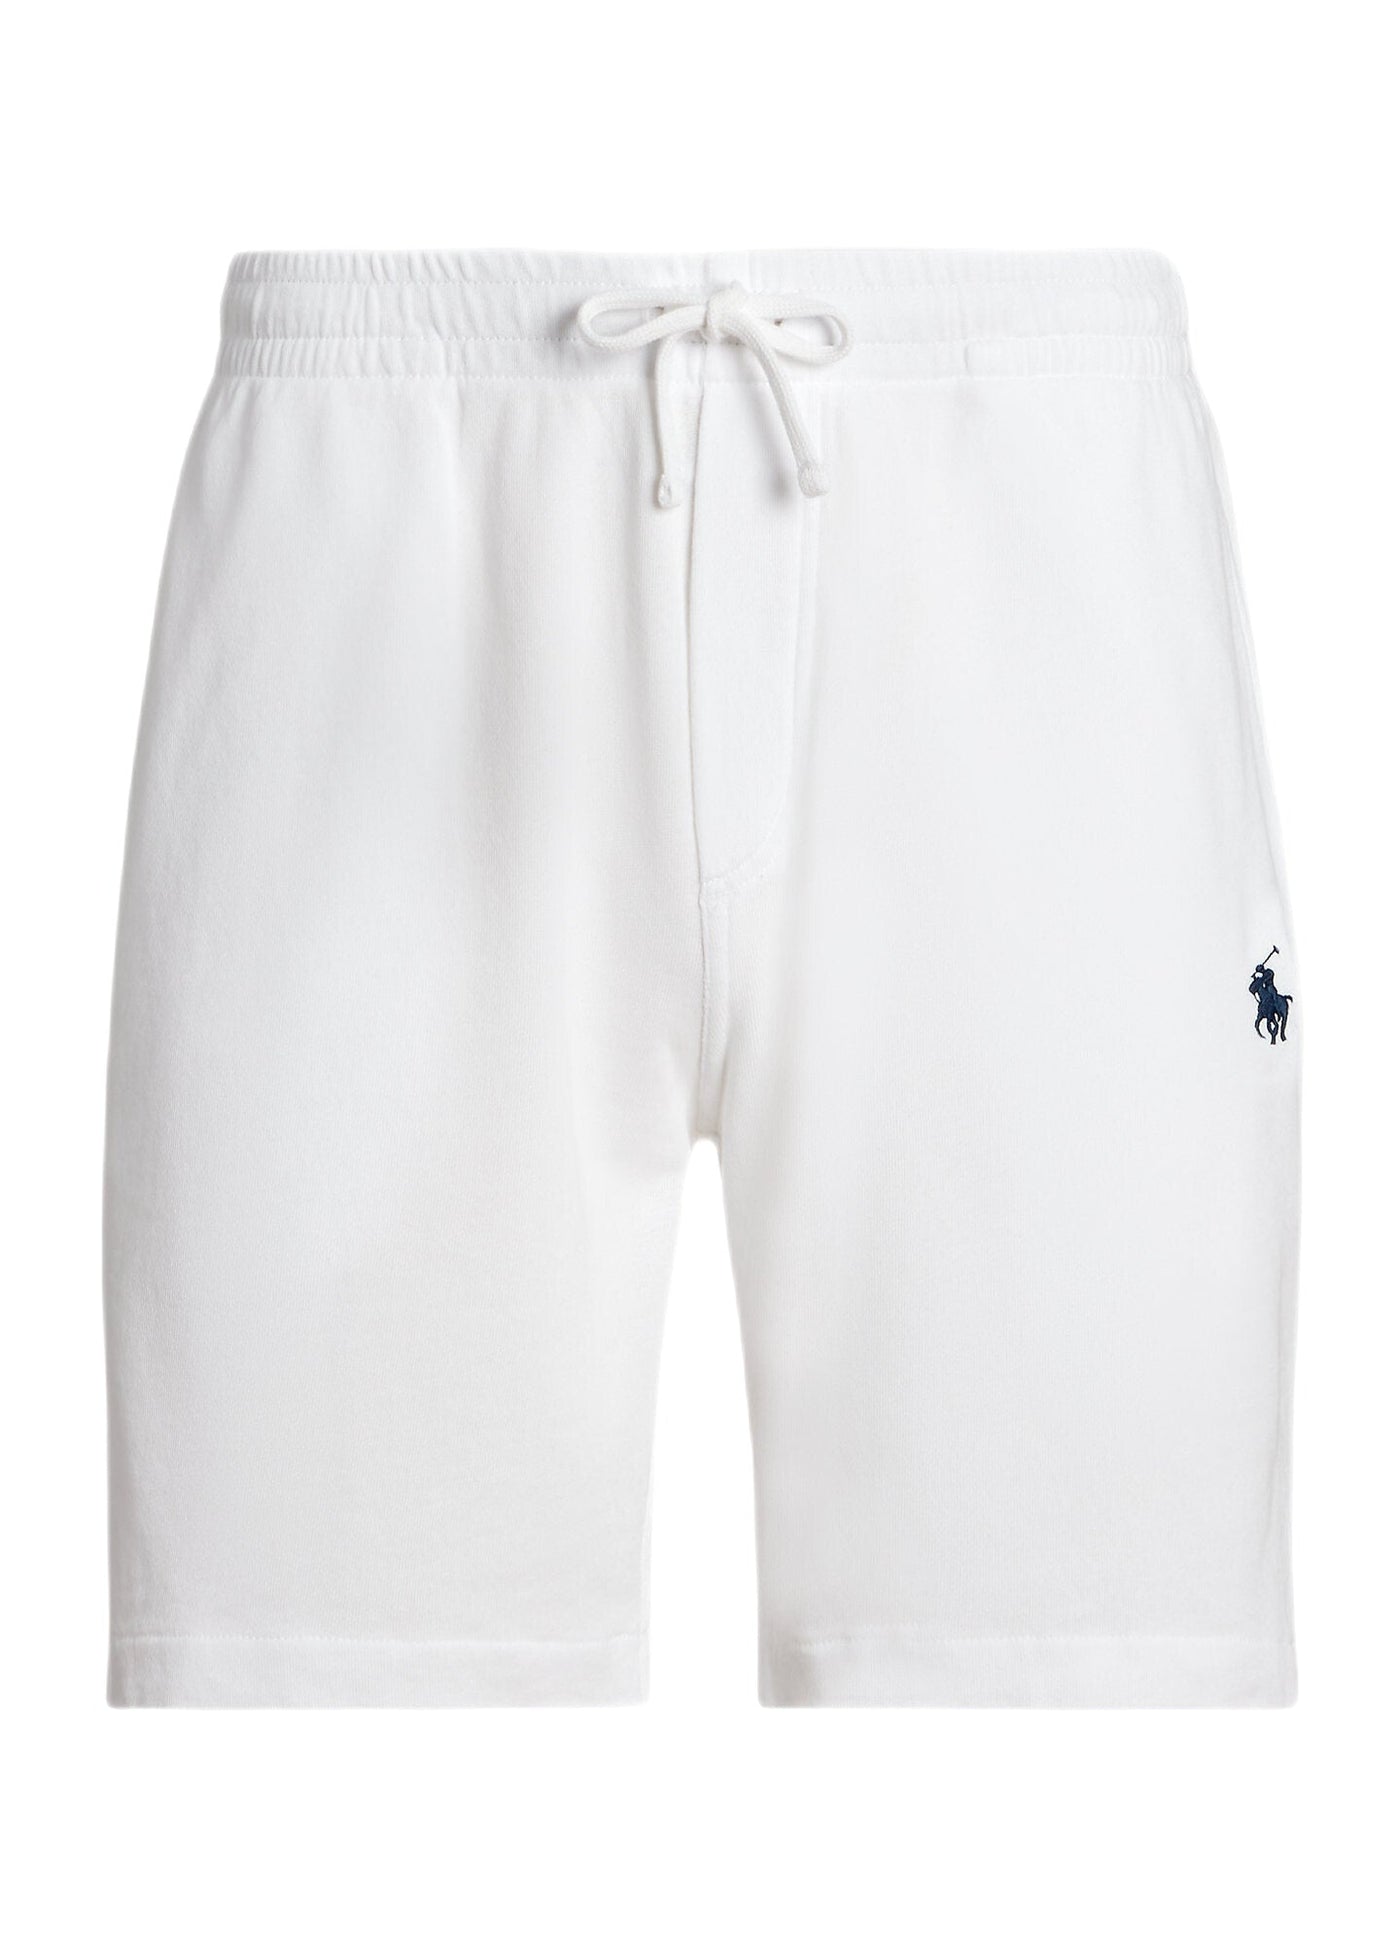 Polo Ralph Lauren - Short white molleton de coton éponge - Lothaire